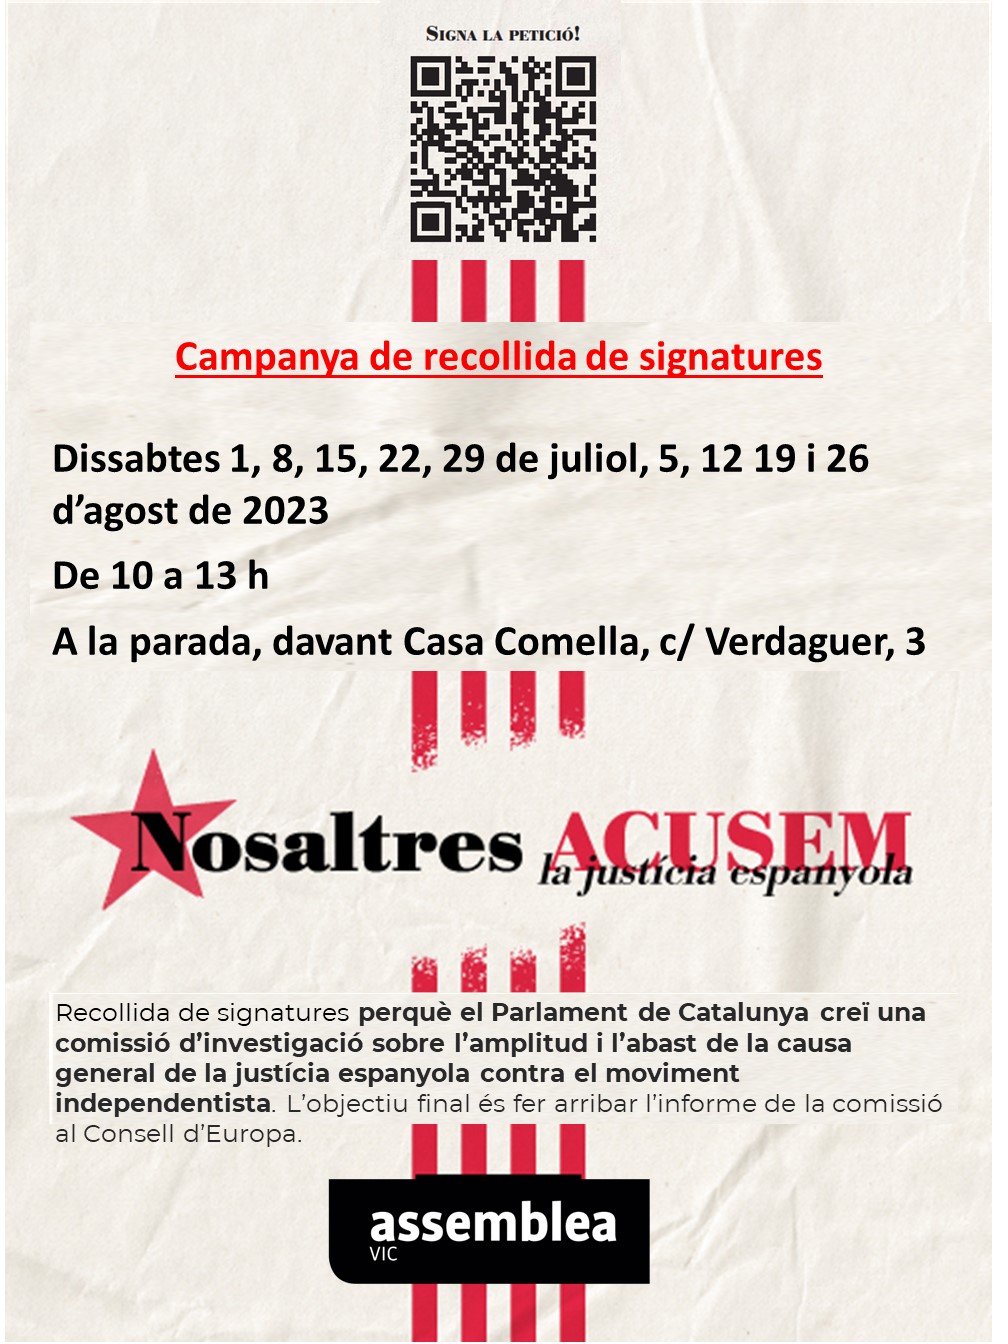 Campanya de recollida de signatures "Nosaltres Acusem"